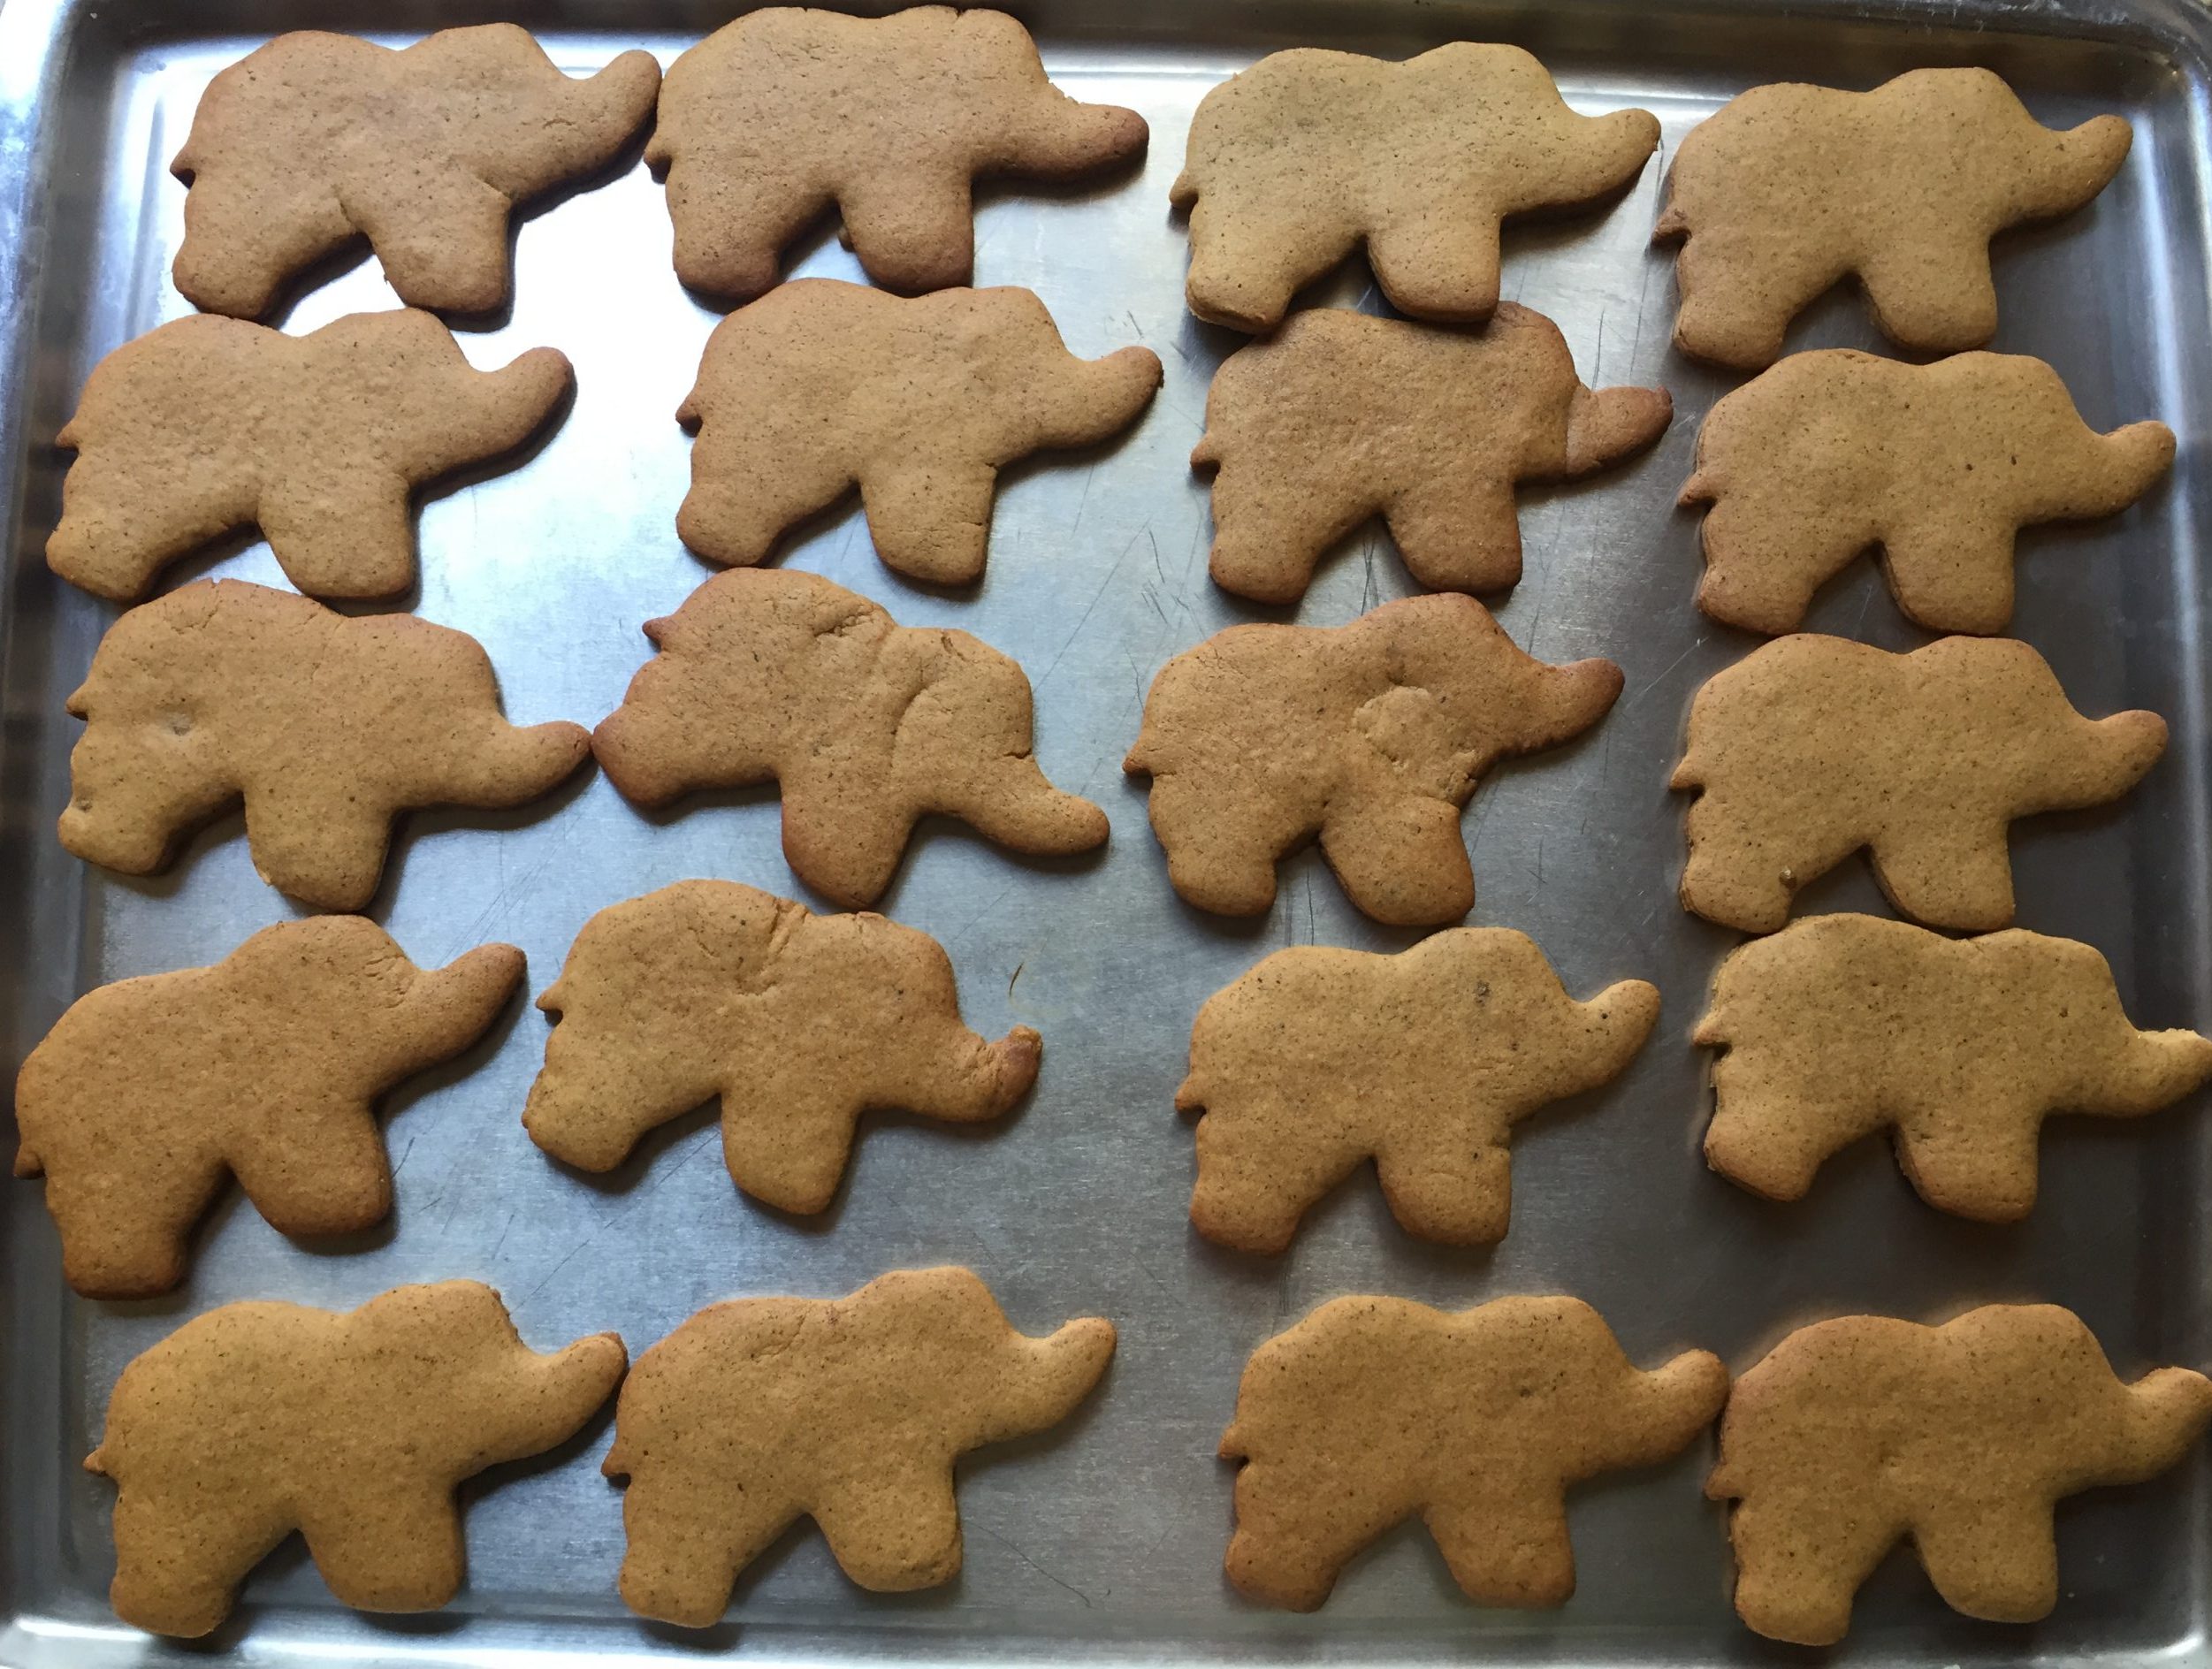 Baked gingerbread cookies